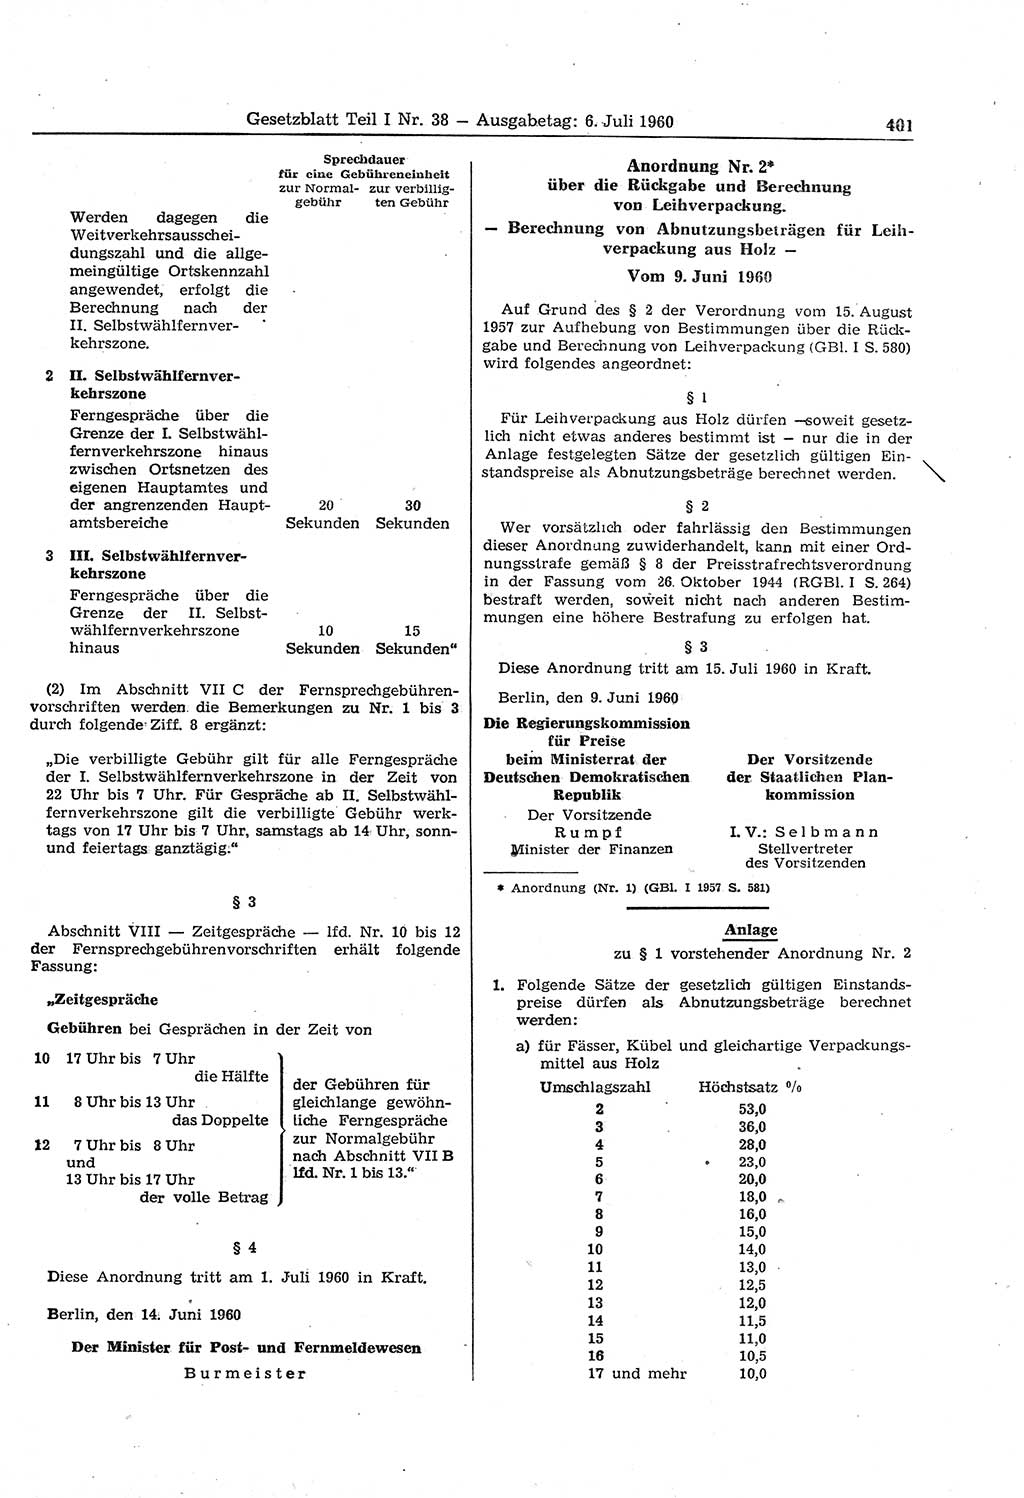 Gesetzblatt (GBl.) der Deutschen Demokratischen Republik (DDR) Teil Ⅰ 1960, Seite 401 (GBl. DDR Ⅰ 1960, S. 401)